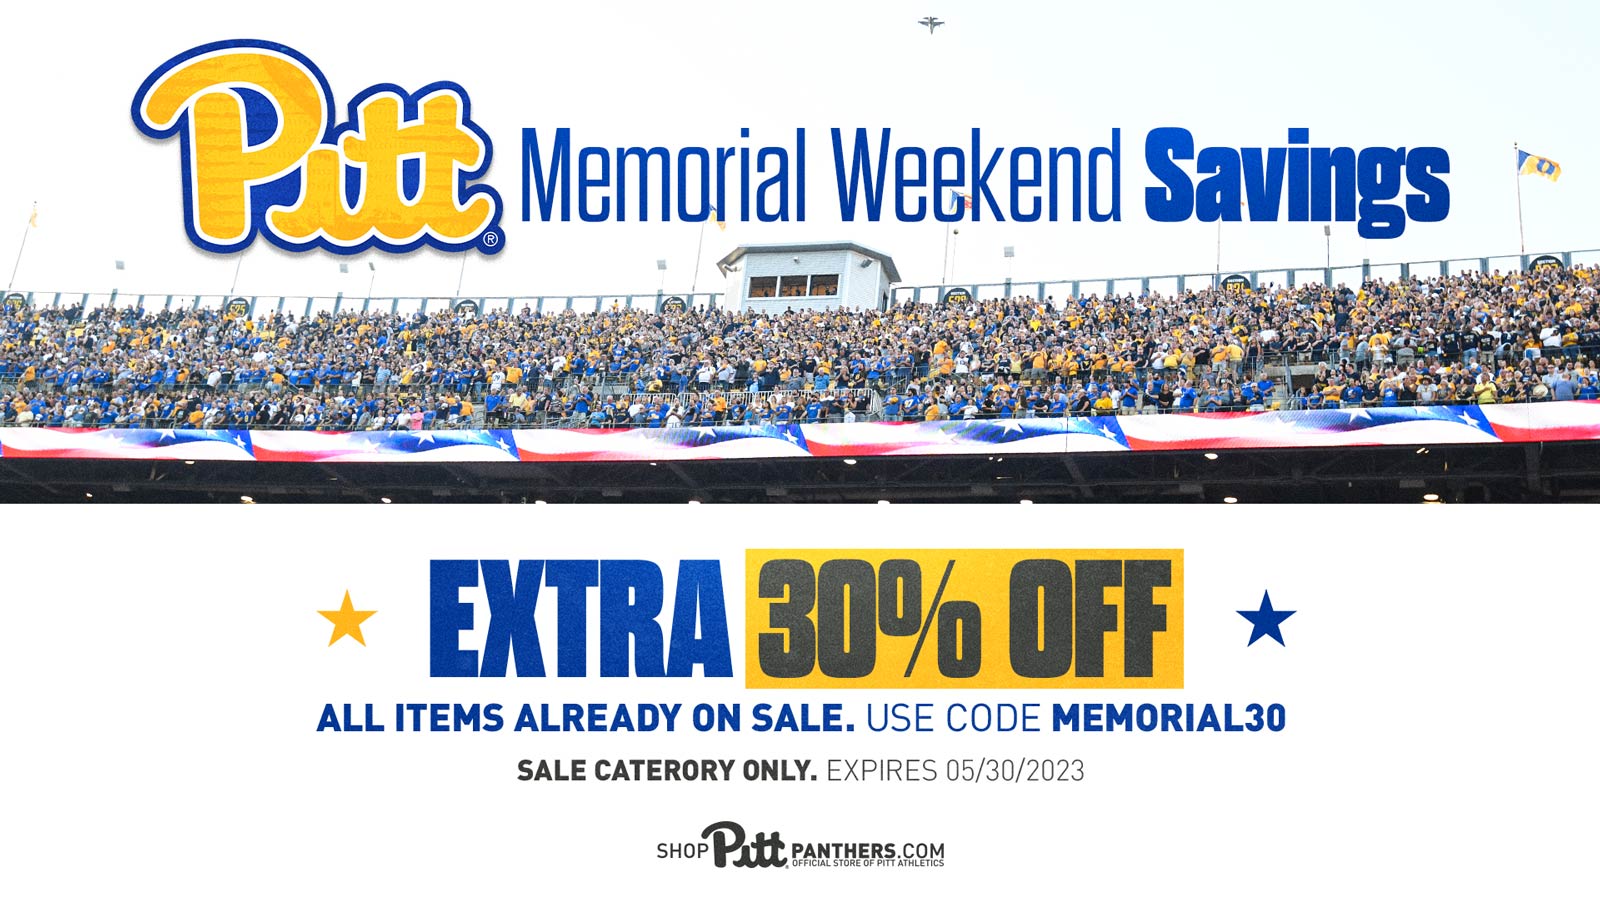 Memorial Weekend Savings 30% Off Sale Items